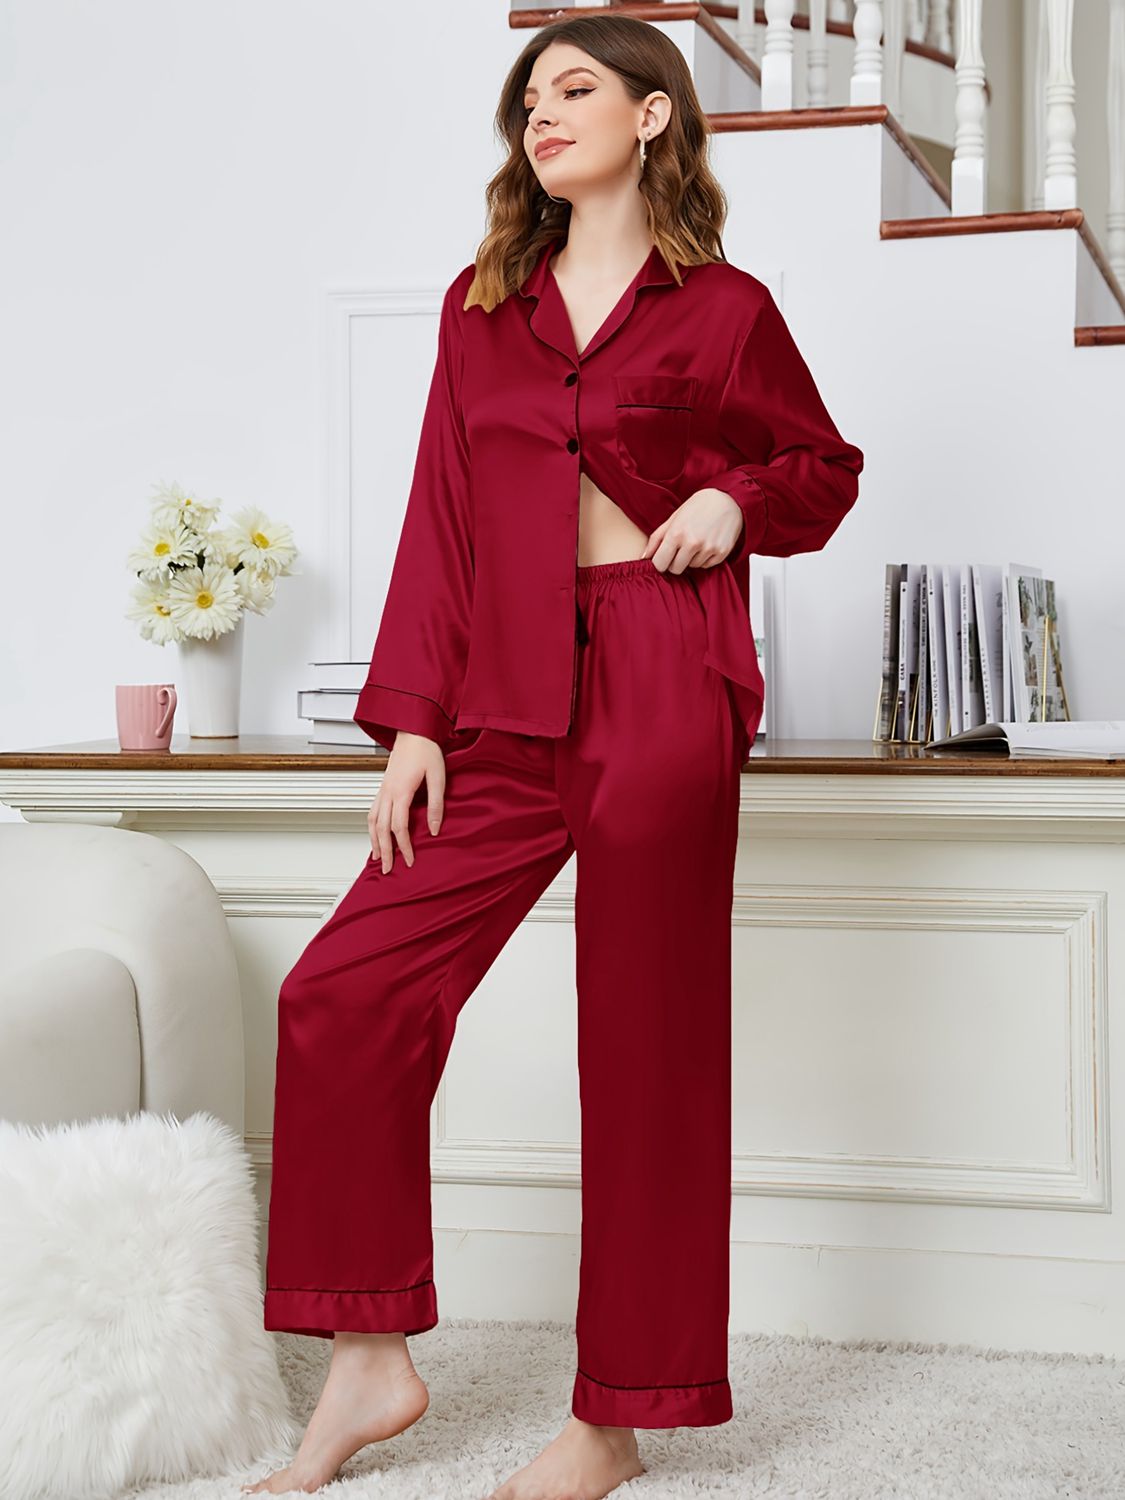 Lapel Collar Long Sleeve Top and Pants Pajama Set